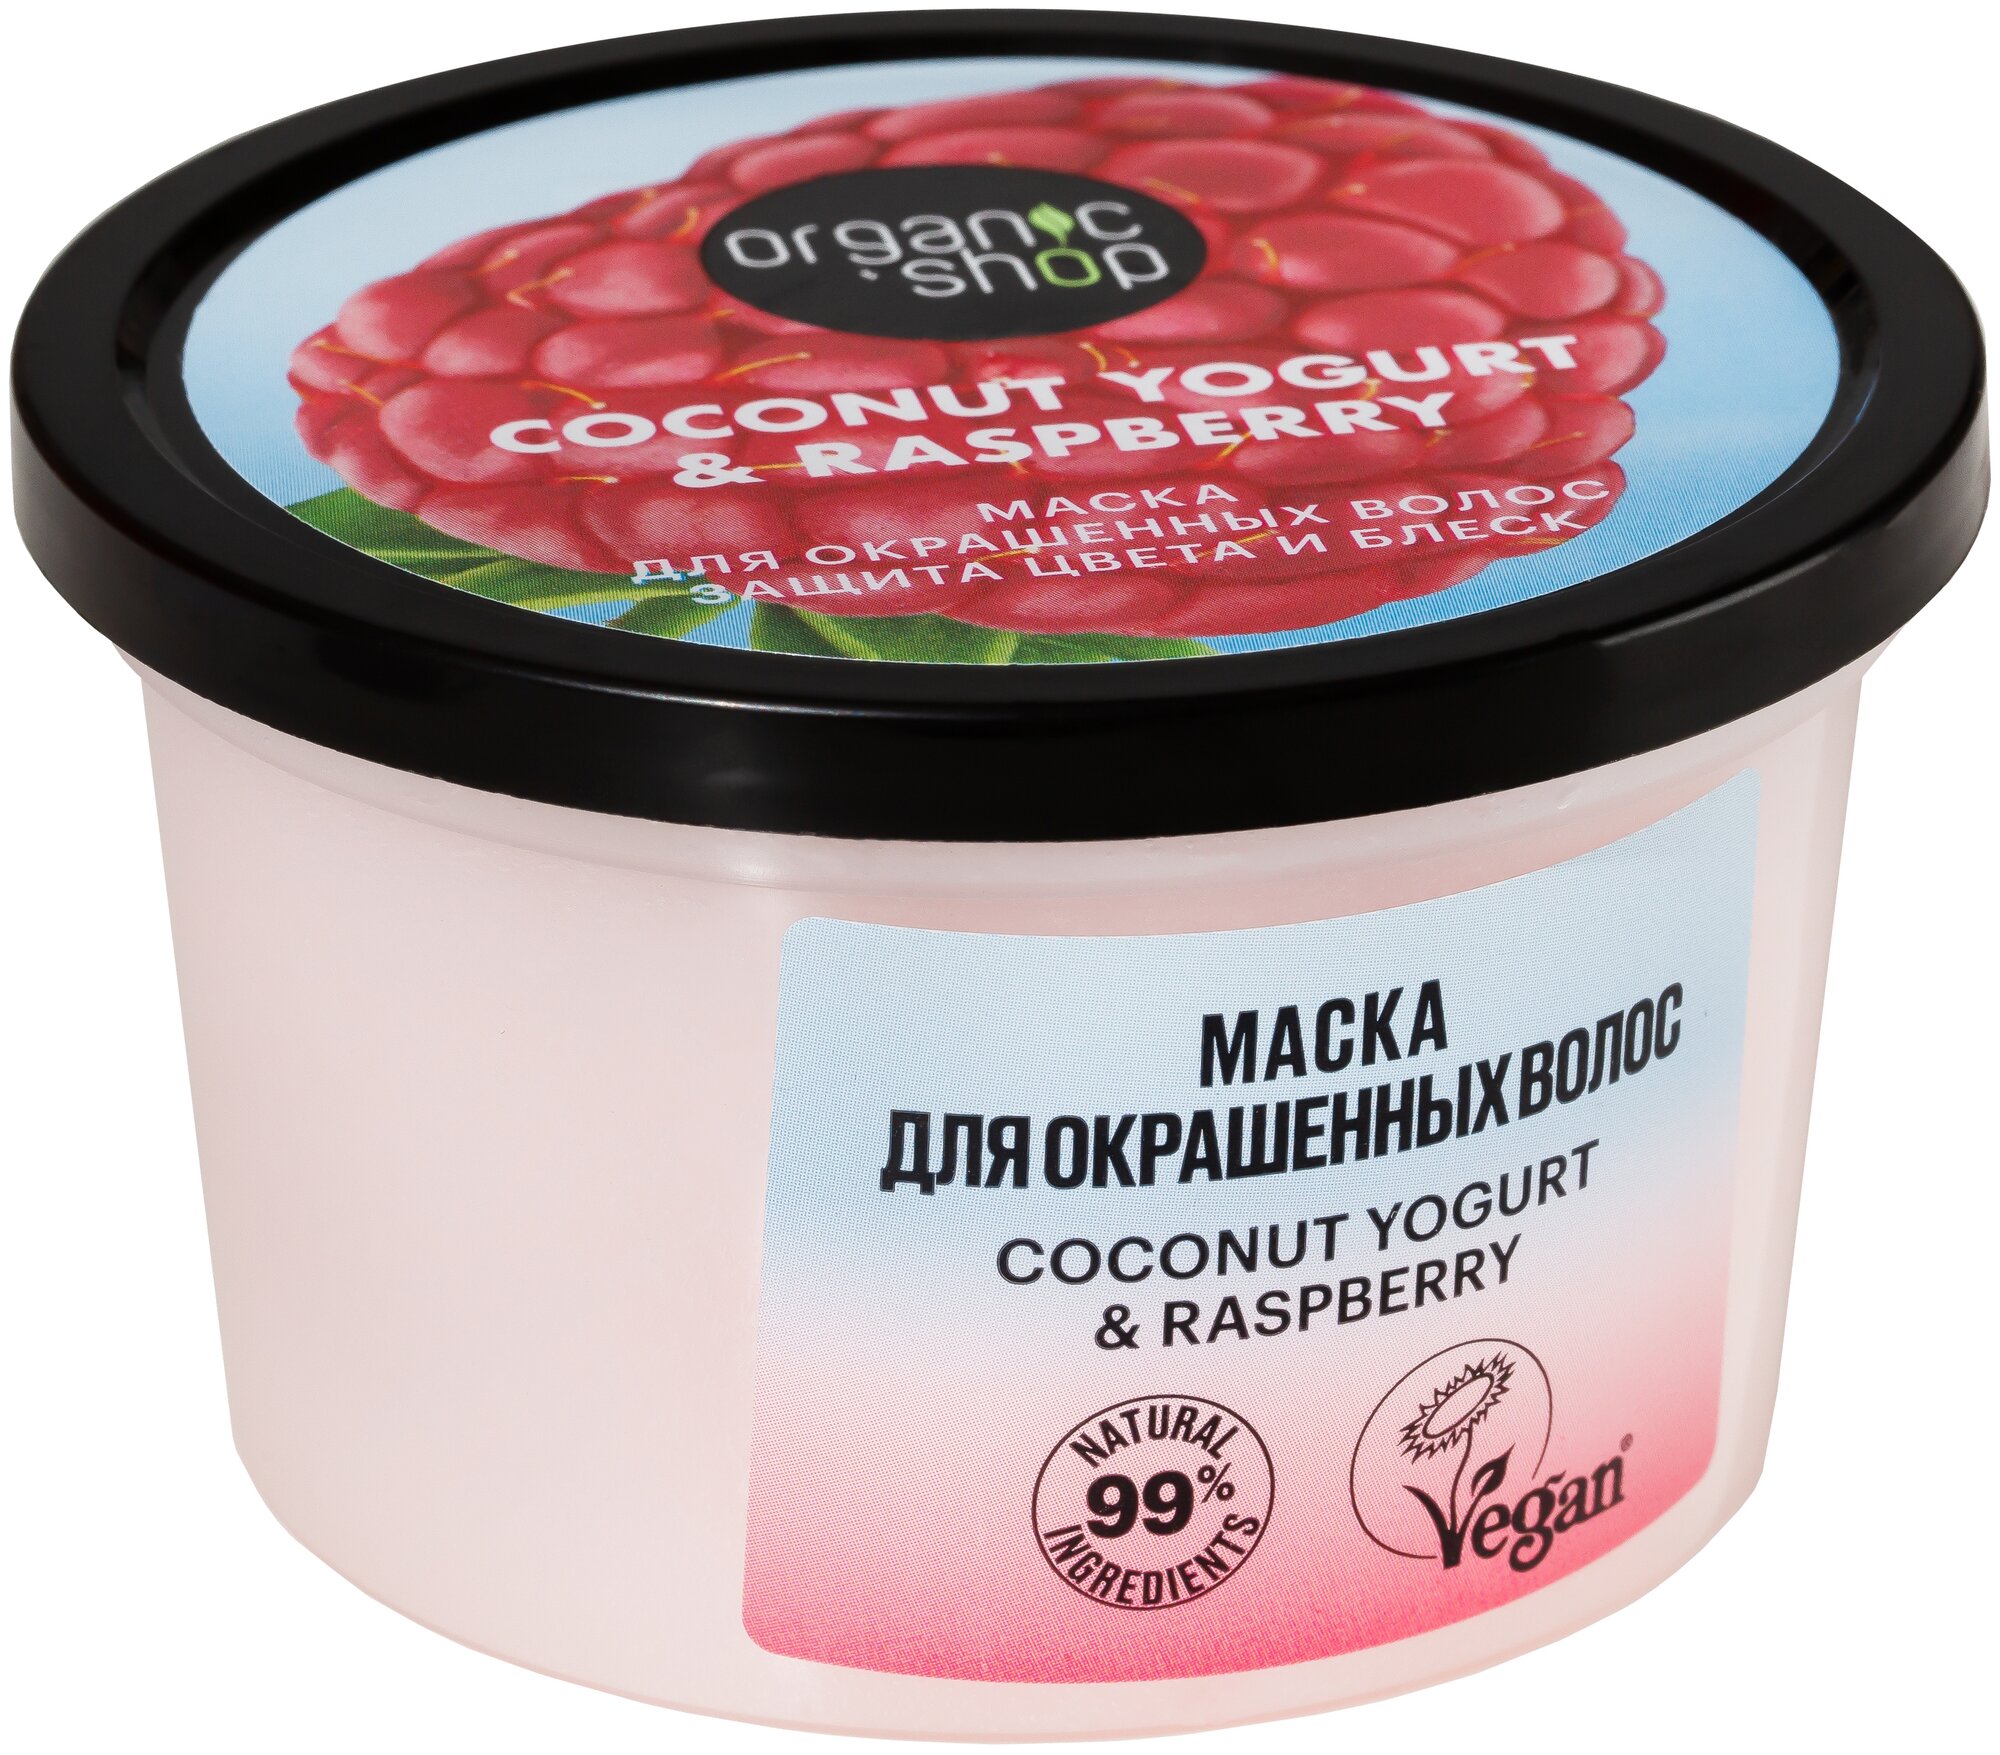 Organic Shop Coconut yogurt Маска для окрашенных волос Защита цвета и блеск, 250 мл, банка